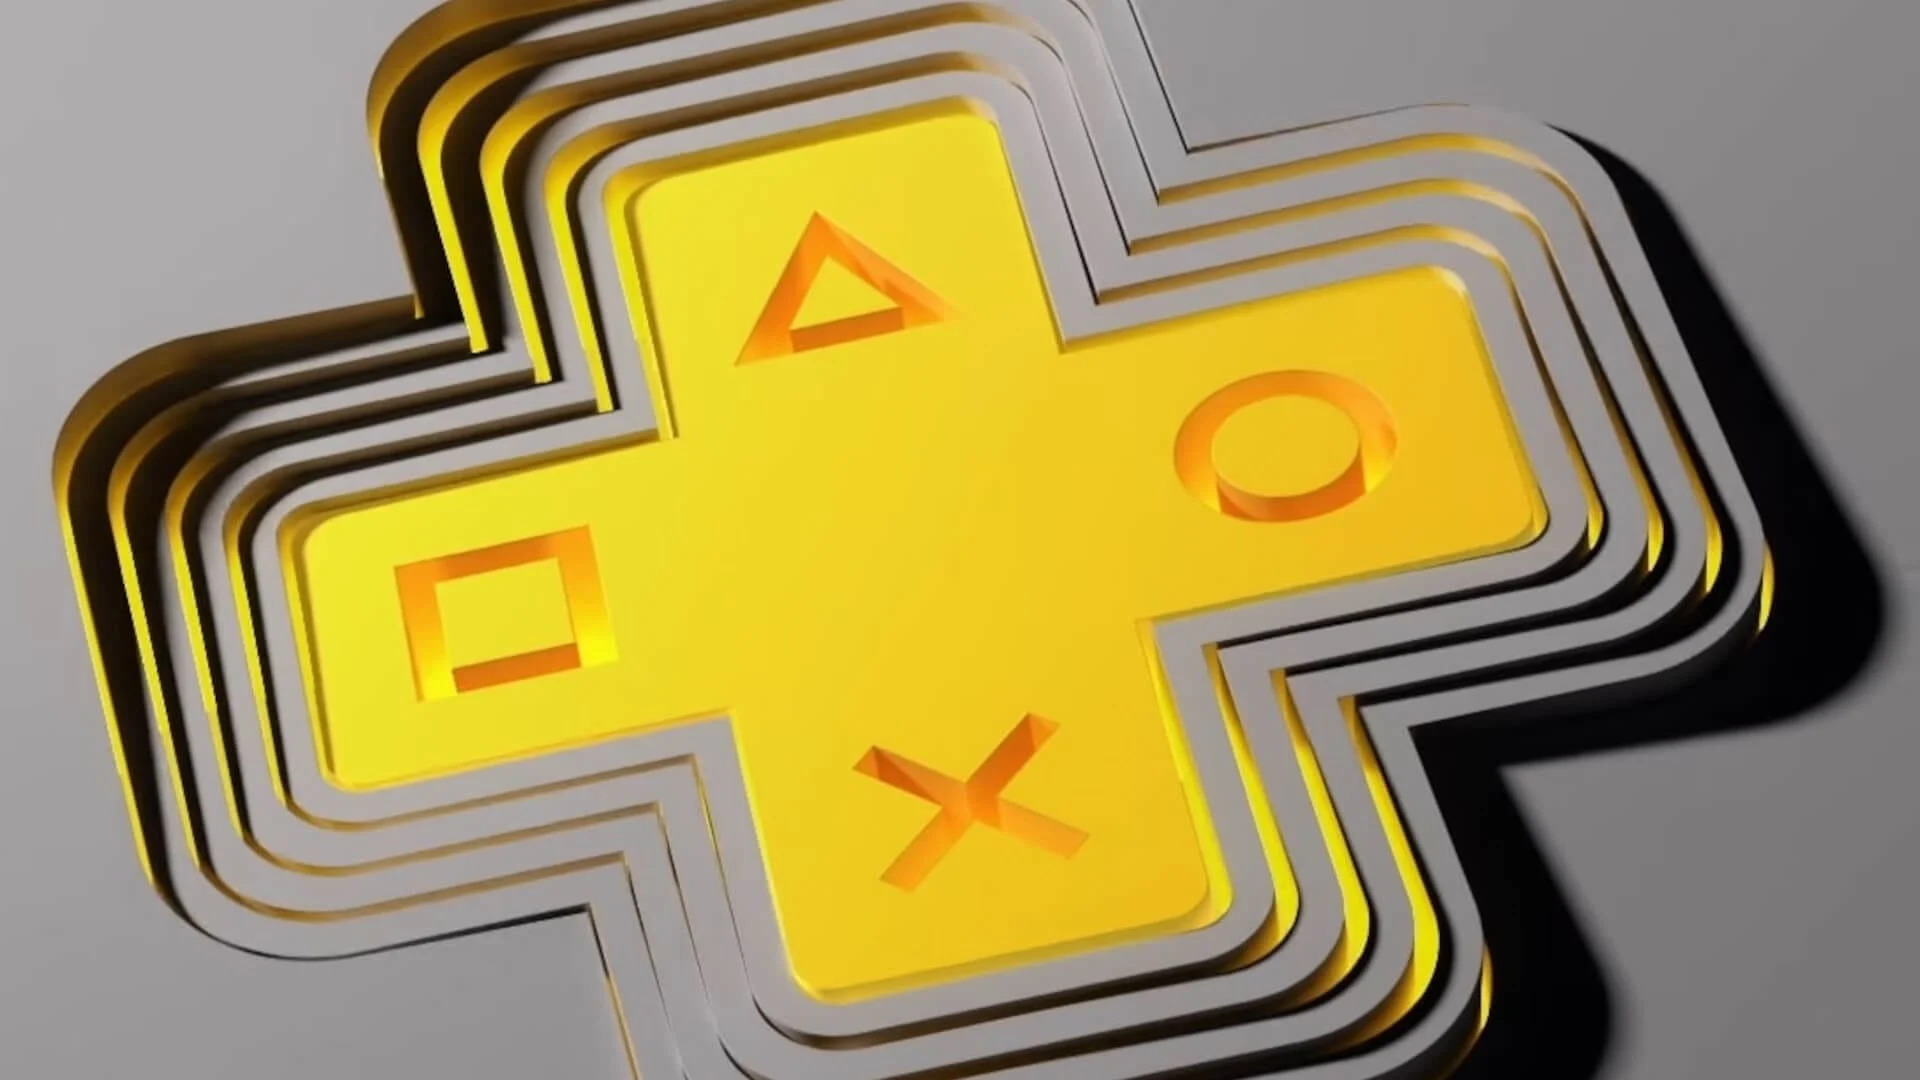 Sony наконец-то сможет конкурировать с потоковой передачей Xbox Game Pass благодаря патенту